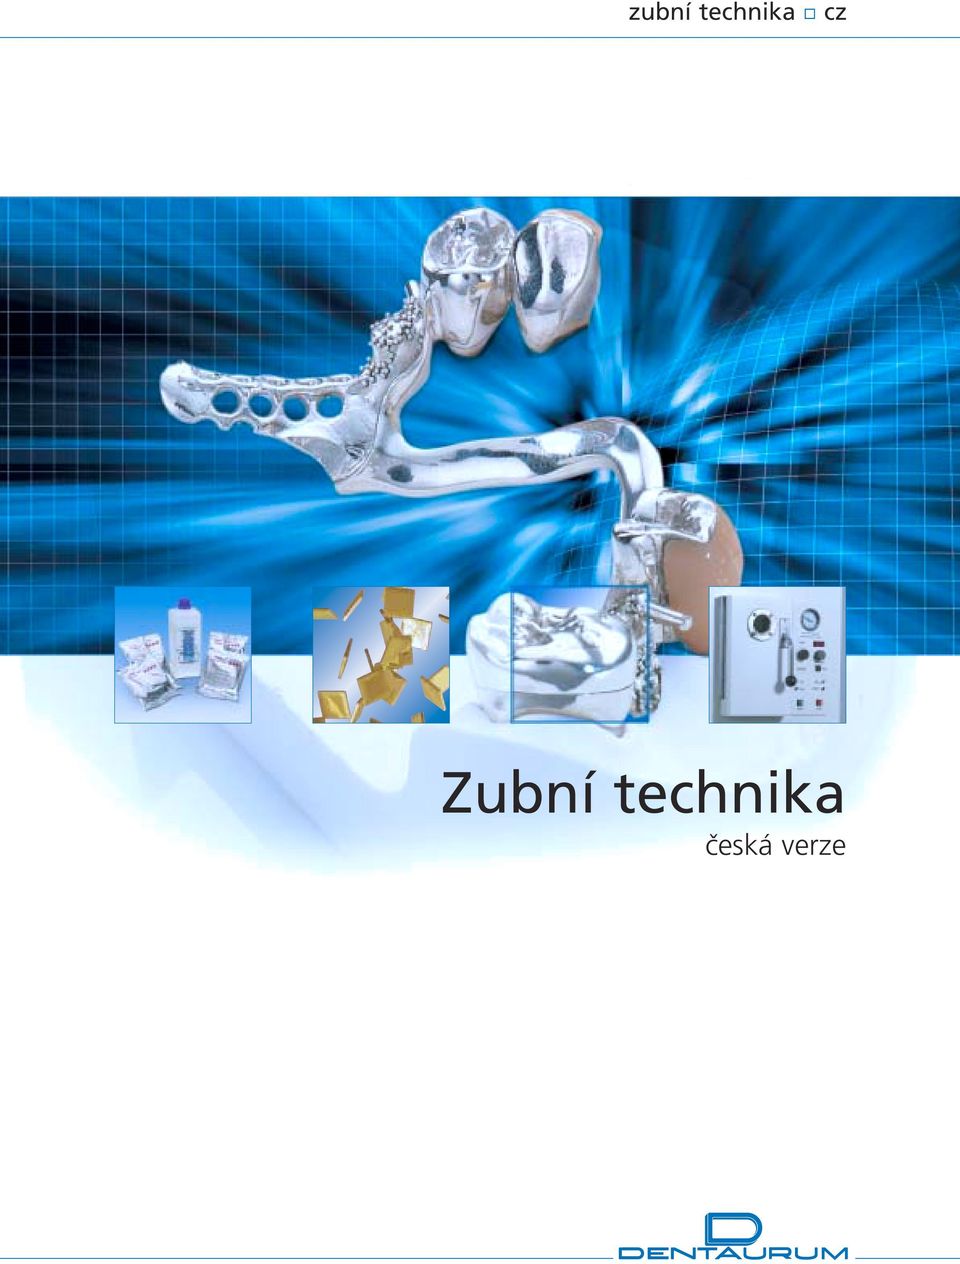 zubní technika cz Zubní technika česká verze - PDF Stažení zdarma